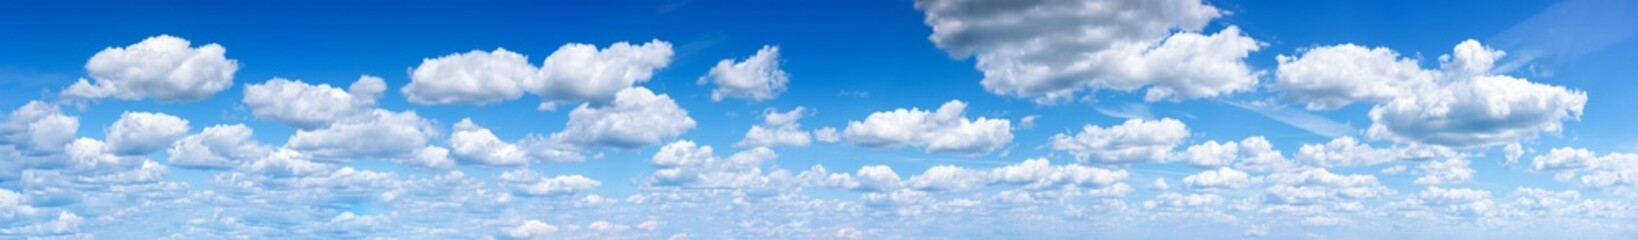 Panorama des blauen Himmels mit Wolken